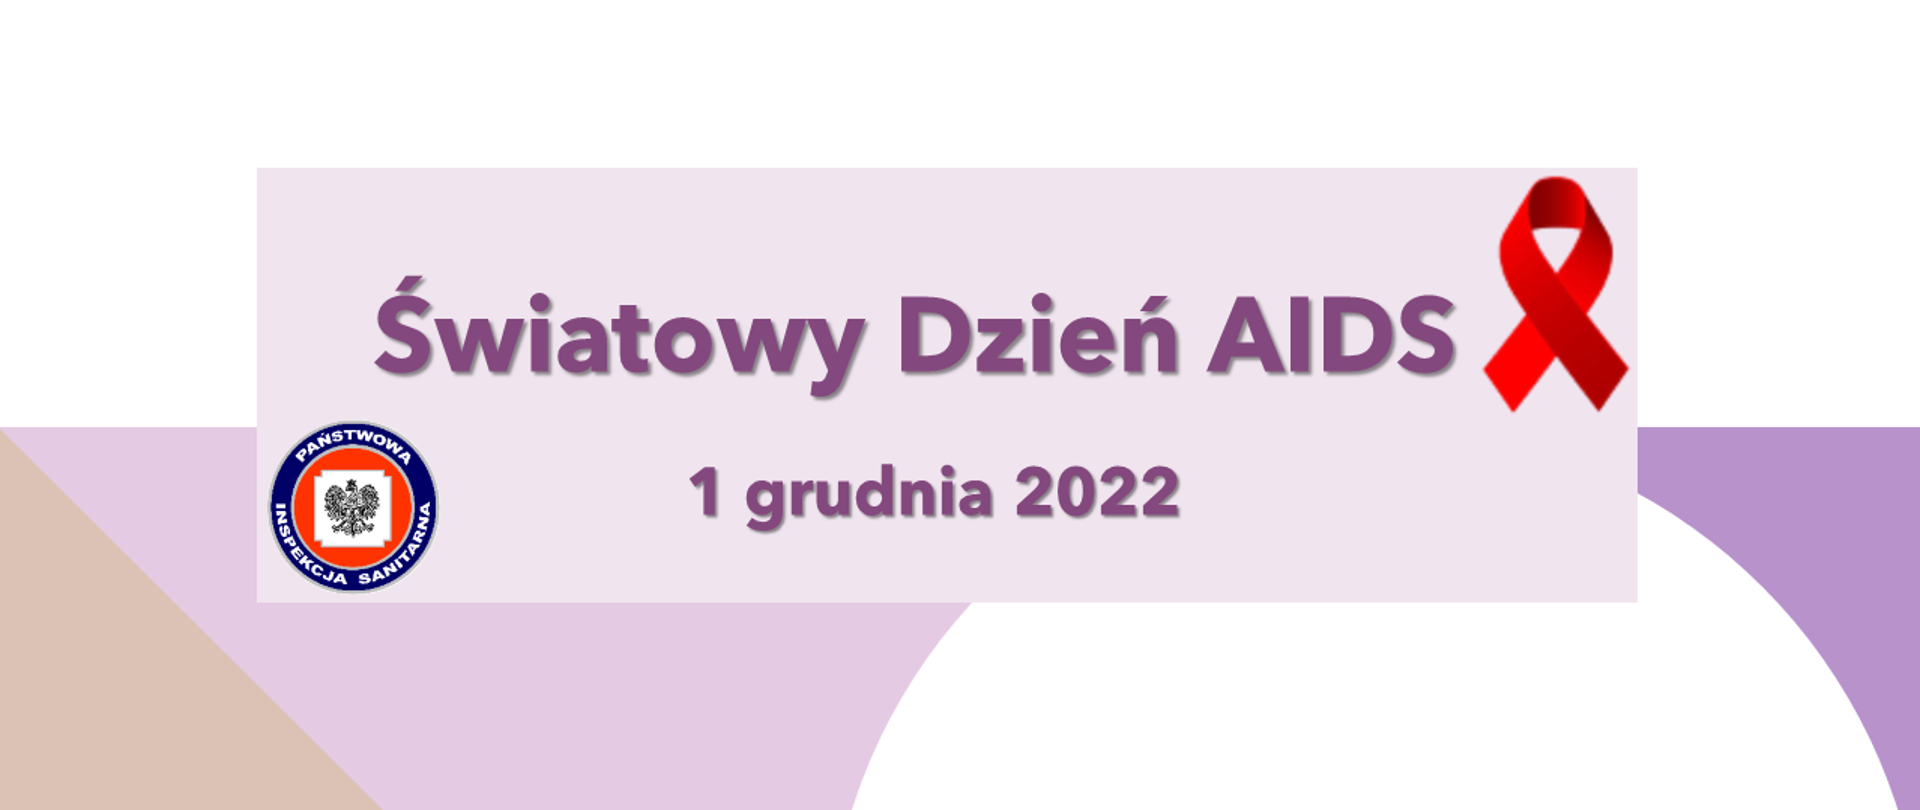 dzien_aids_2022